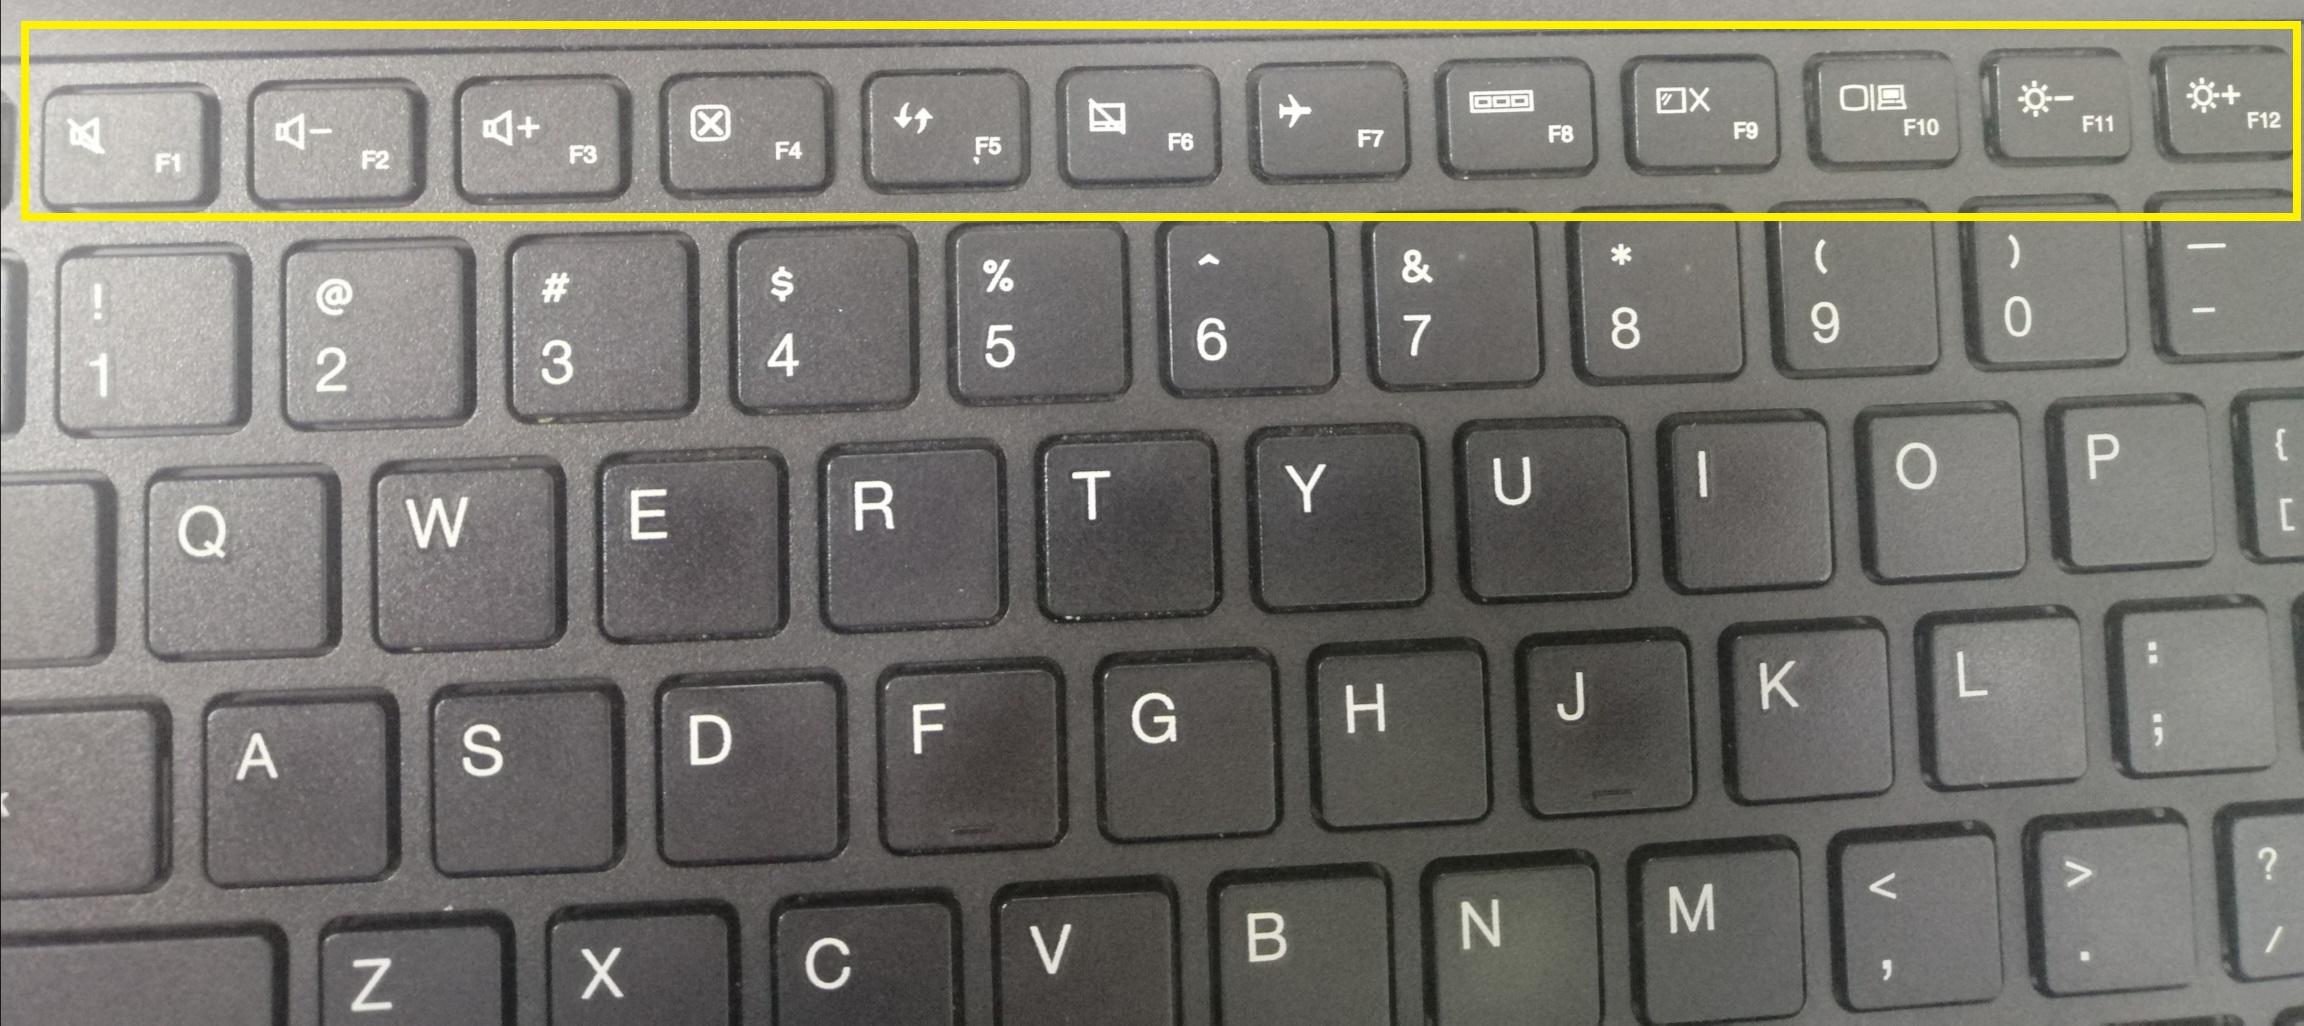 详解笔记本电脑键盘上f1~f12键上图标的含义及运用